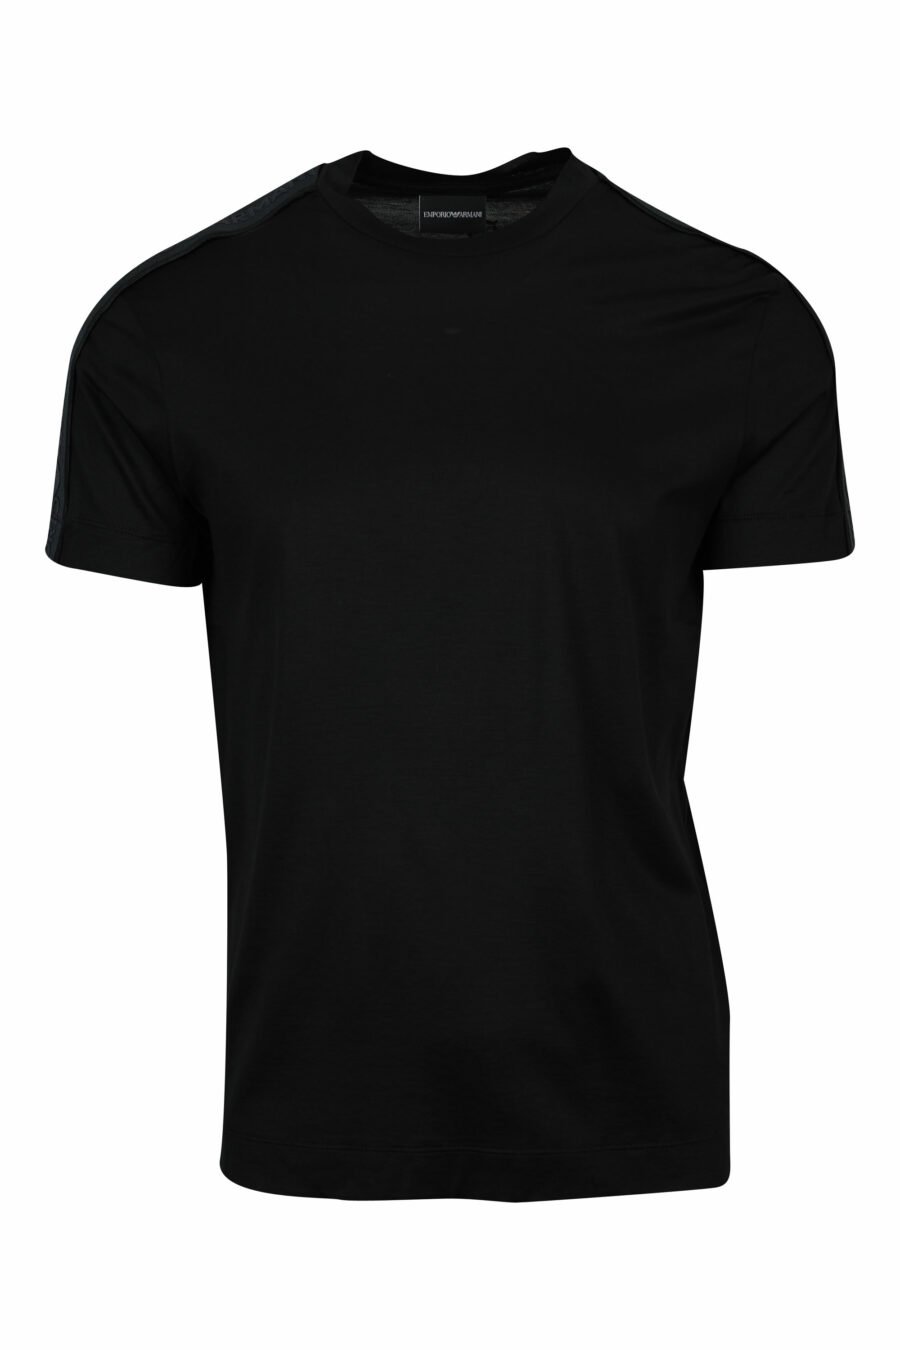 Camiseta negra con logo en hombros monocromático - 8057970958369